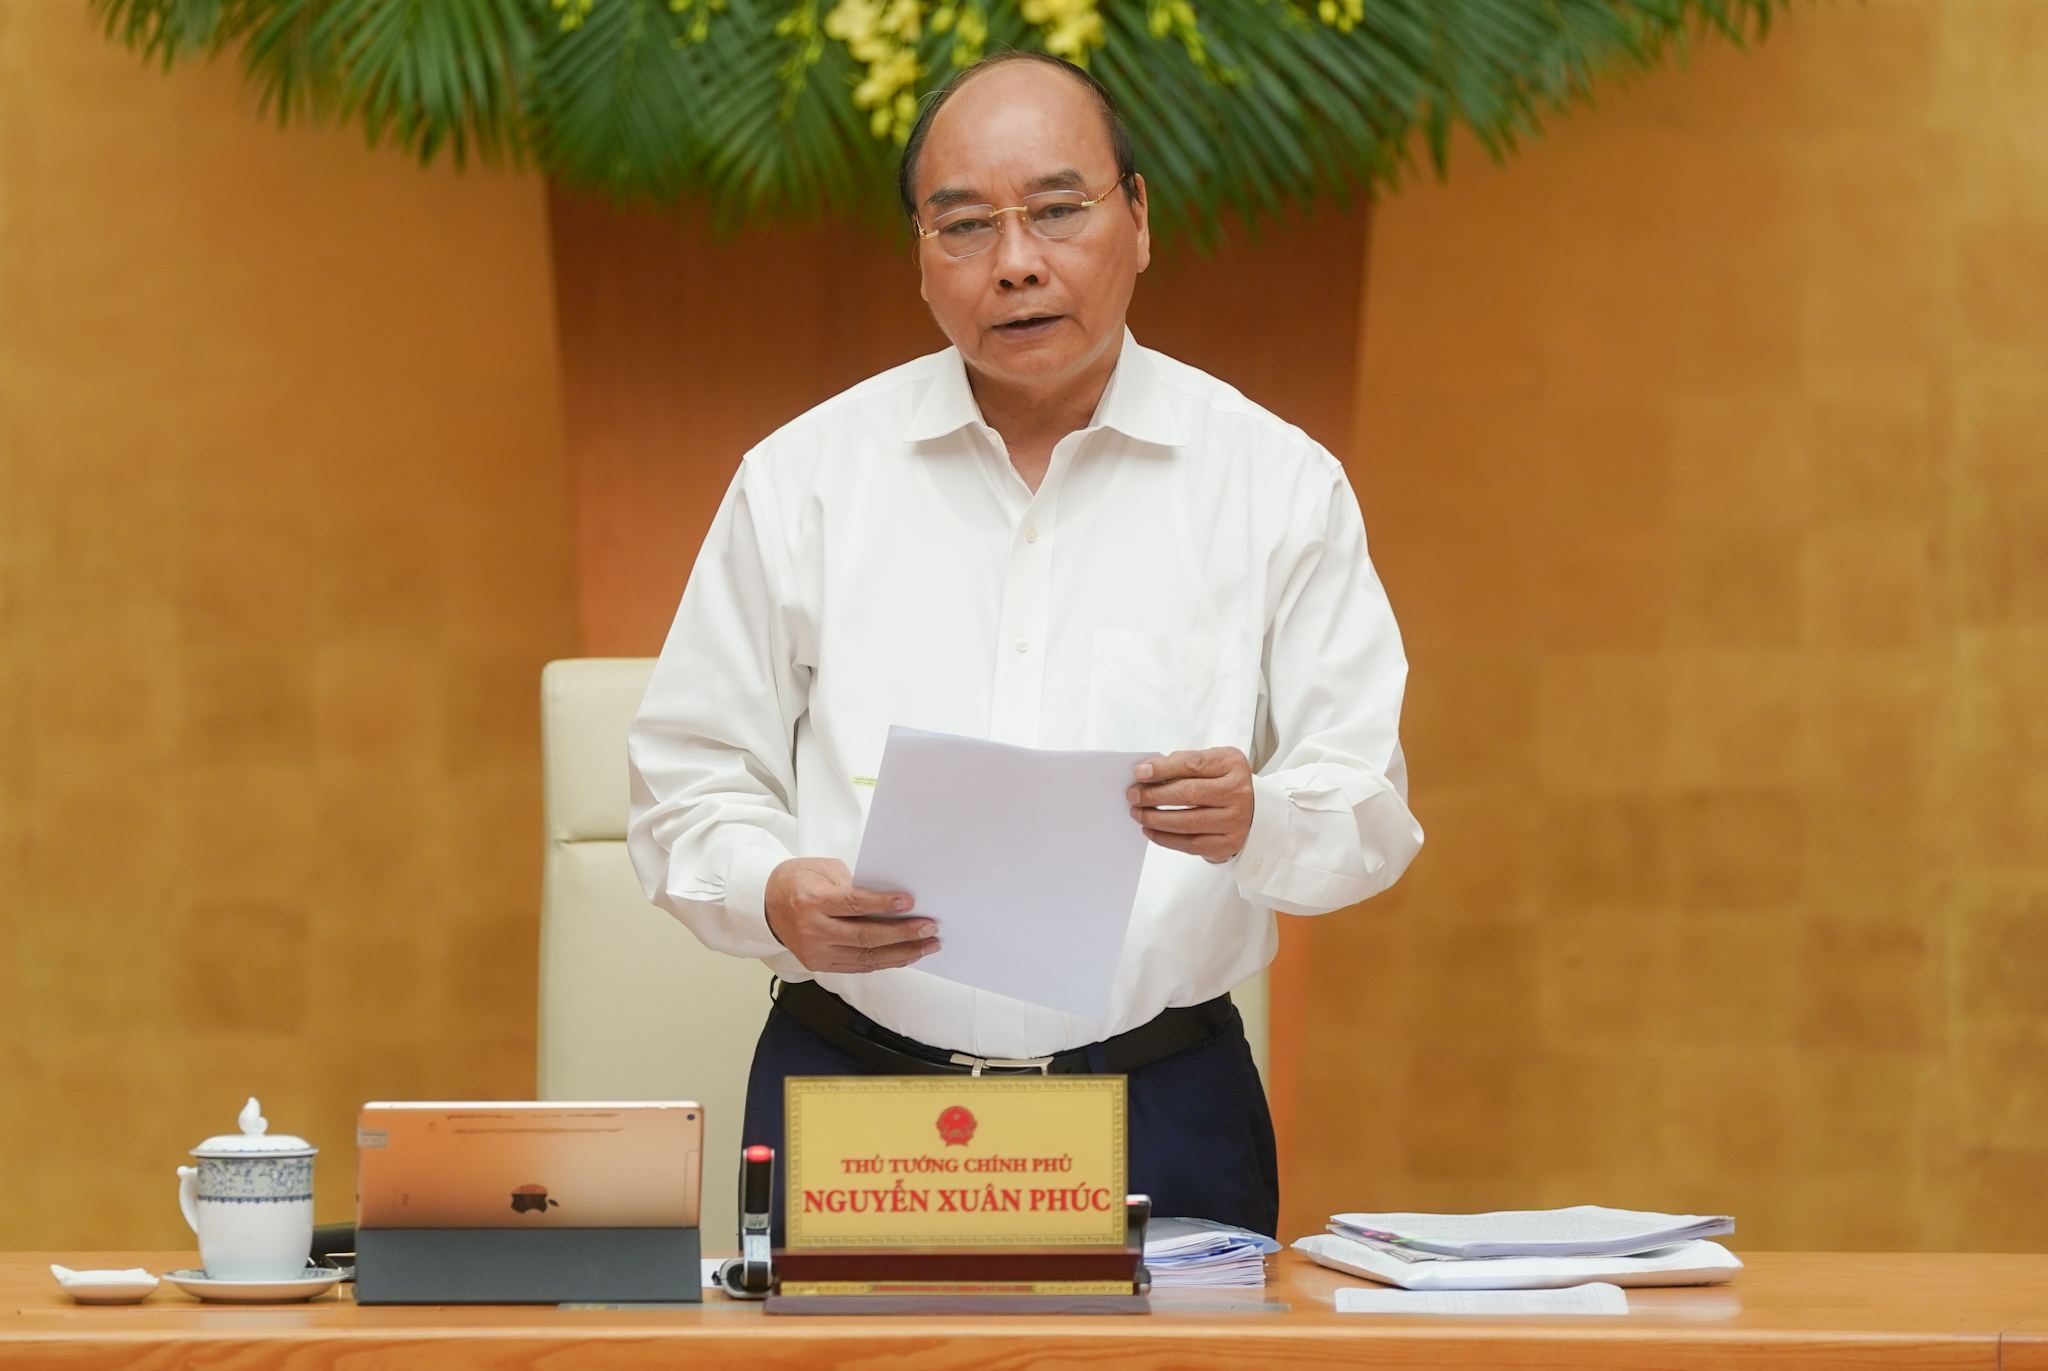 Thủ tướng Nguyễn Xuân Phúc phát biểu kết luận phiên họp. Ảnh: VGP/Quang Hiếu Thủ tướng nhấn mạnh trong phát biểu kết luận phiên họp Chính phủ thường kỳ tháng 4-2020 vào chiều 5-5.